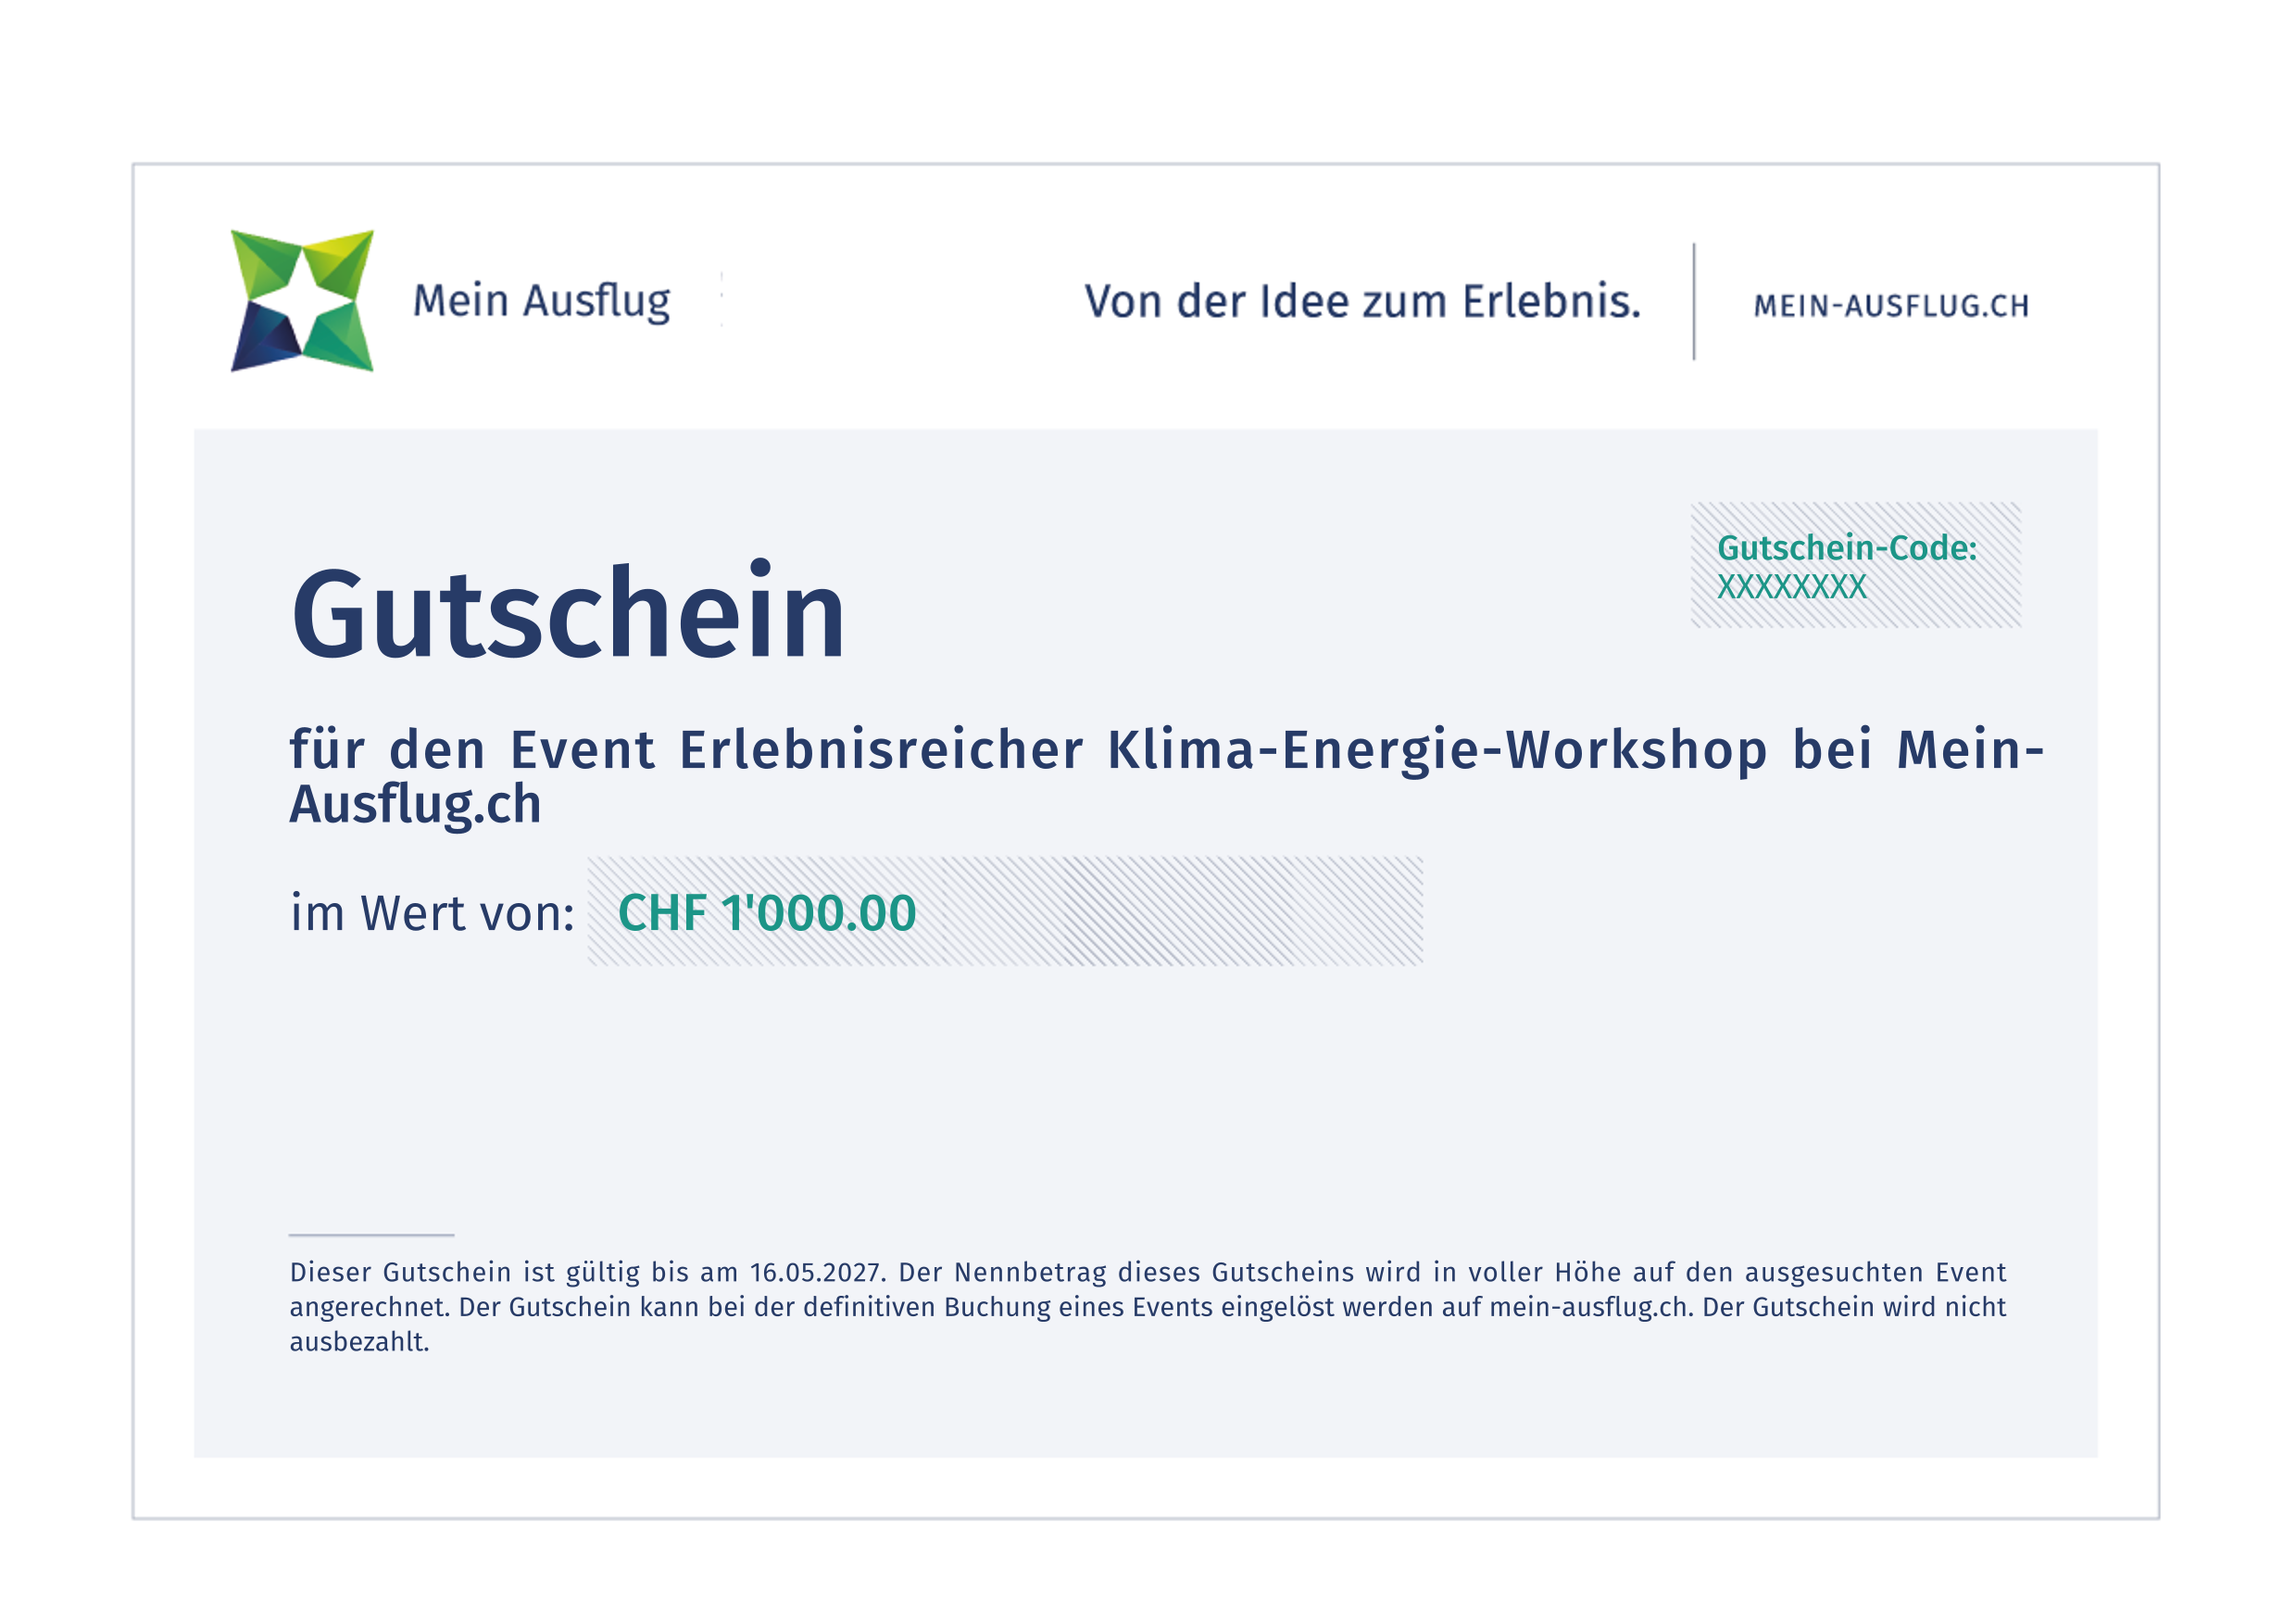 Erlebnisreicher Klima-Energie-Workshop